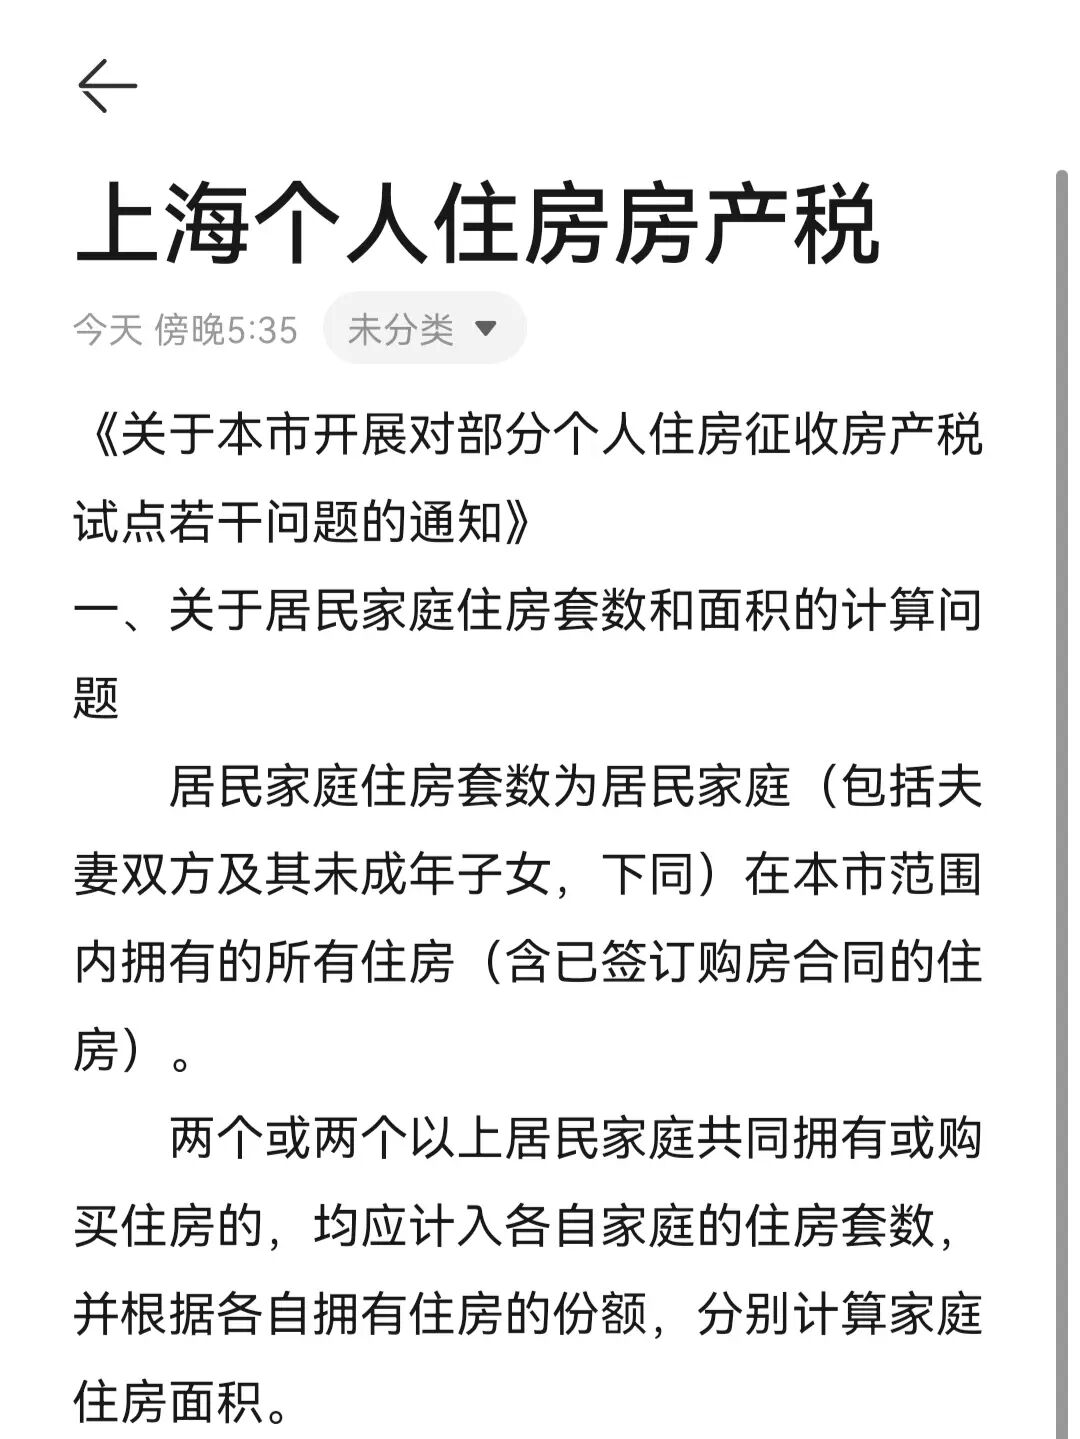 重庆市关于开展对部分个人住房征收房产税改革试点的暂行办法_房产税是对个人征收的_欧盟征收碳航空税总结